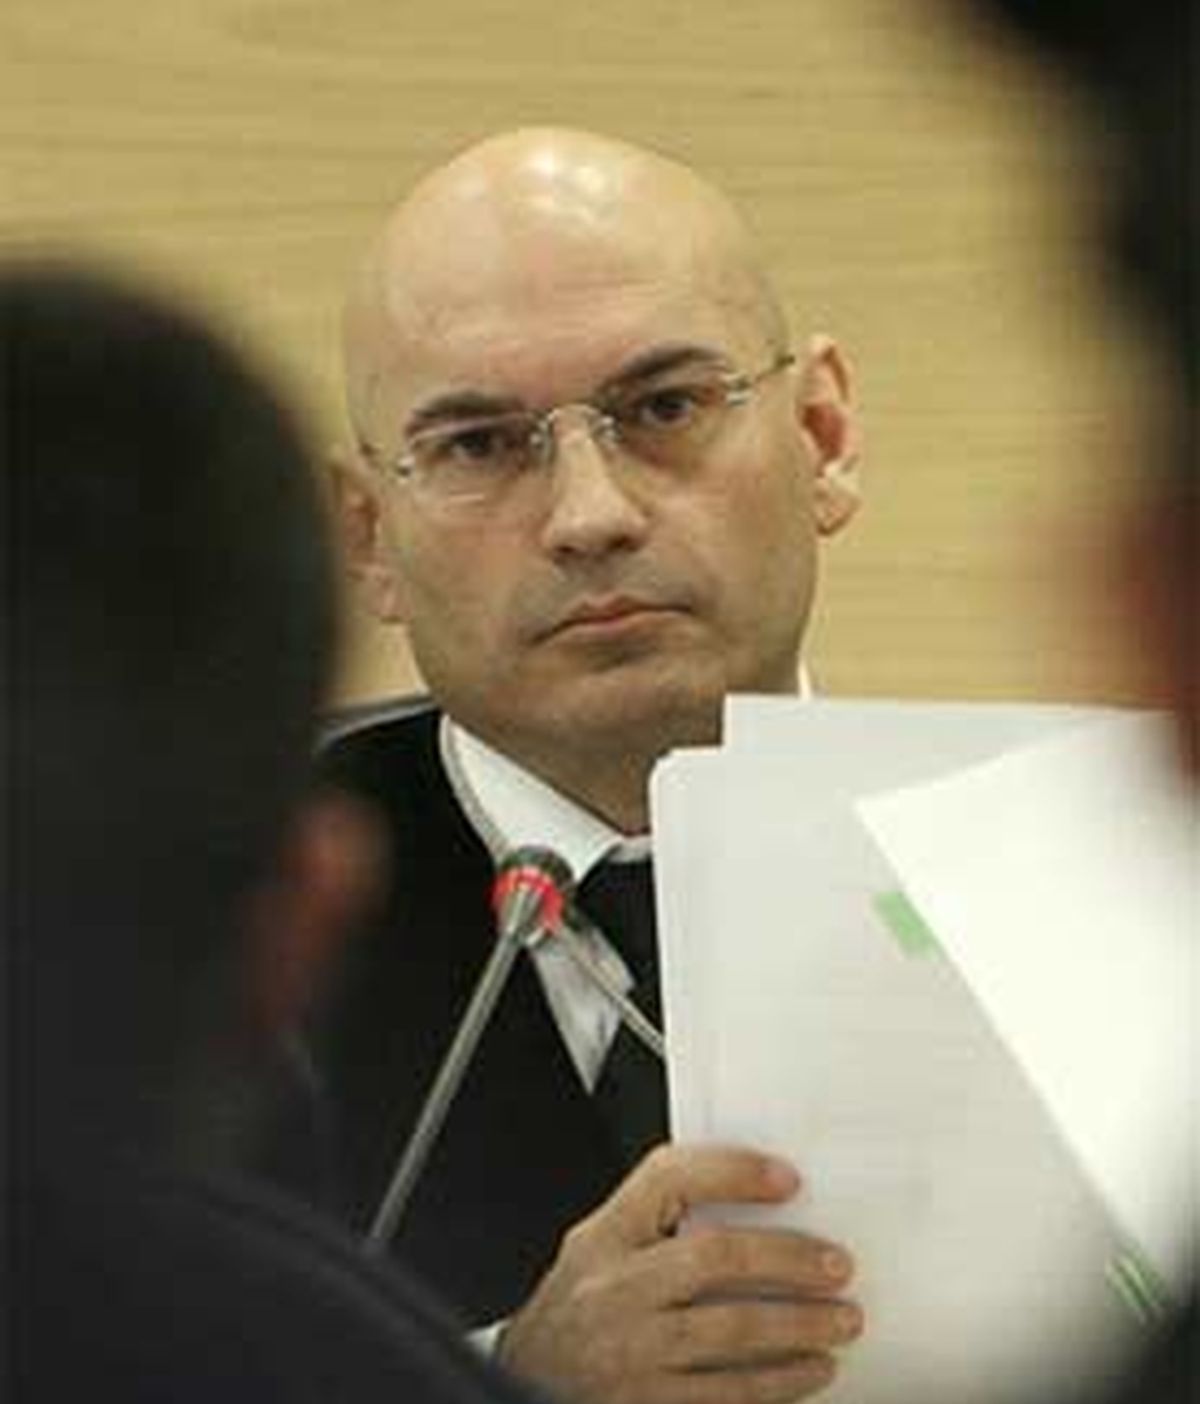 Javier Gómez Bermúdez prohibió a la letrada asistir a un juicio con velo. FOTO: EFE / Archivo